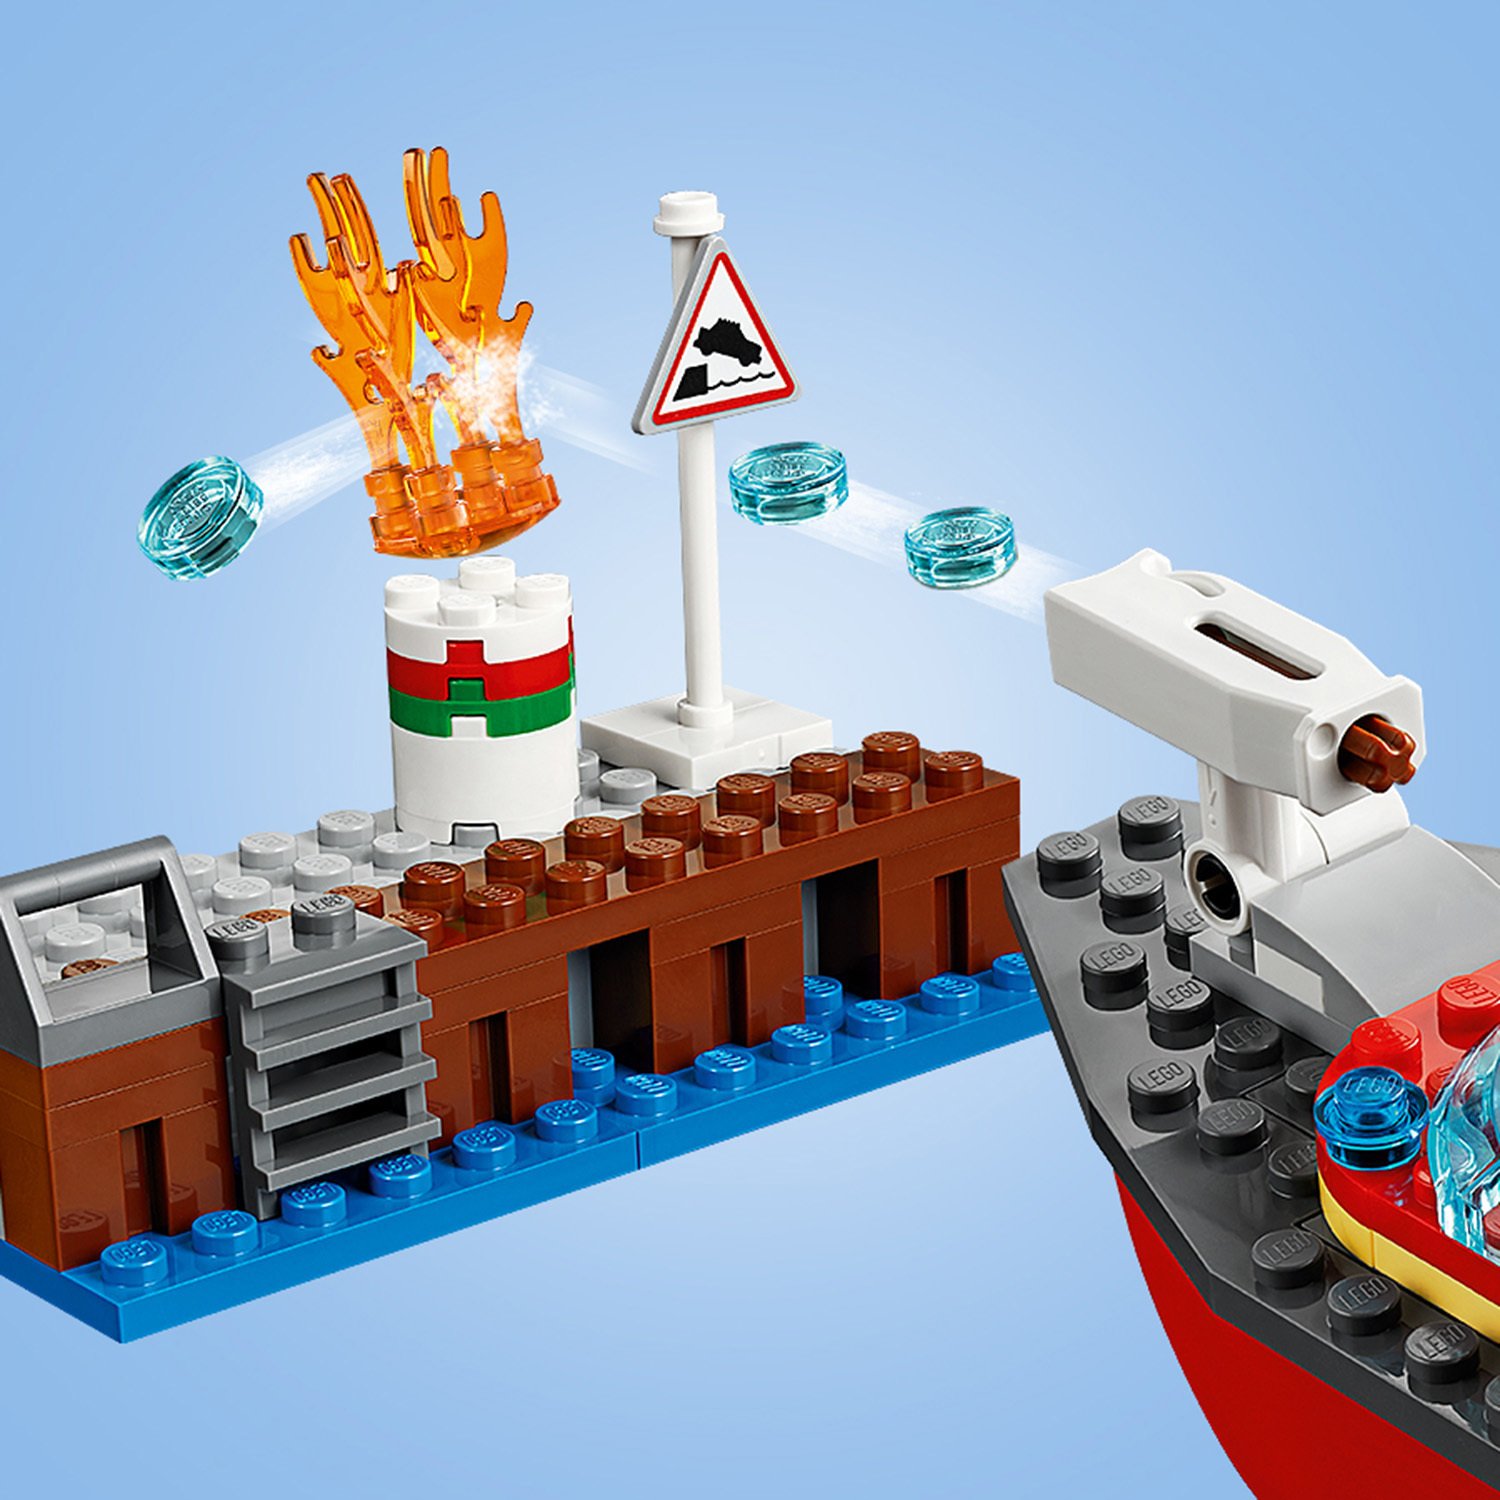 Конструктор LEGO City 60213 Пожар в порту